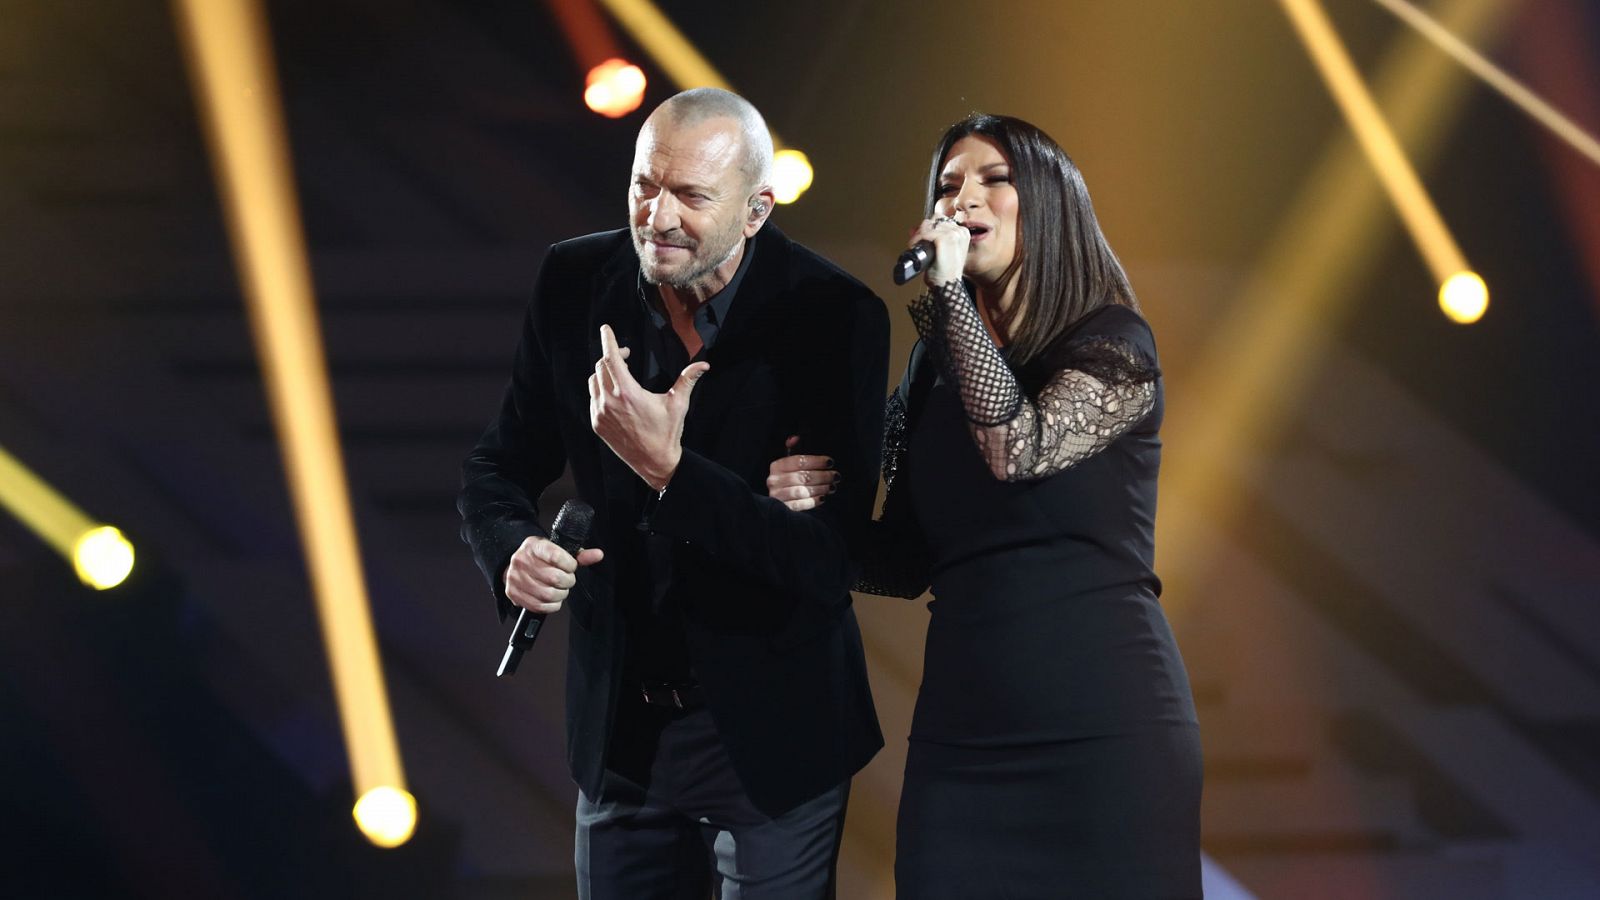 OT 2018 - Laura Pausini y Biagio Antonacci cantan "El valor de seguir adelante" en la gala 12